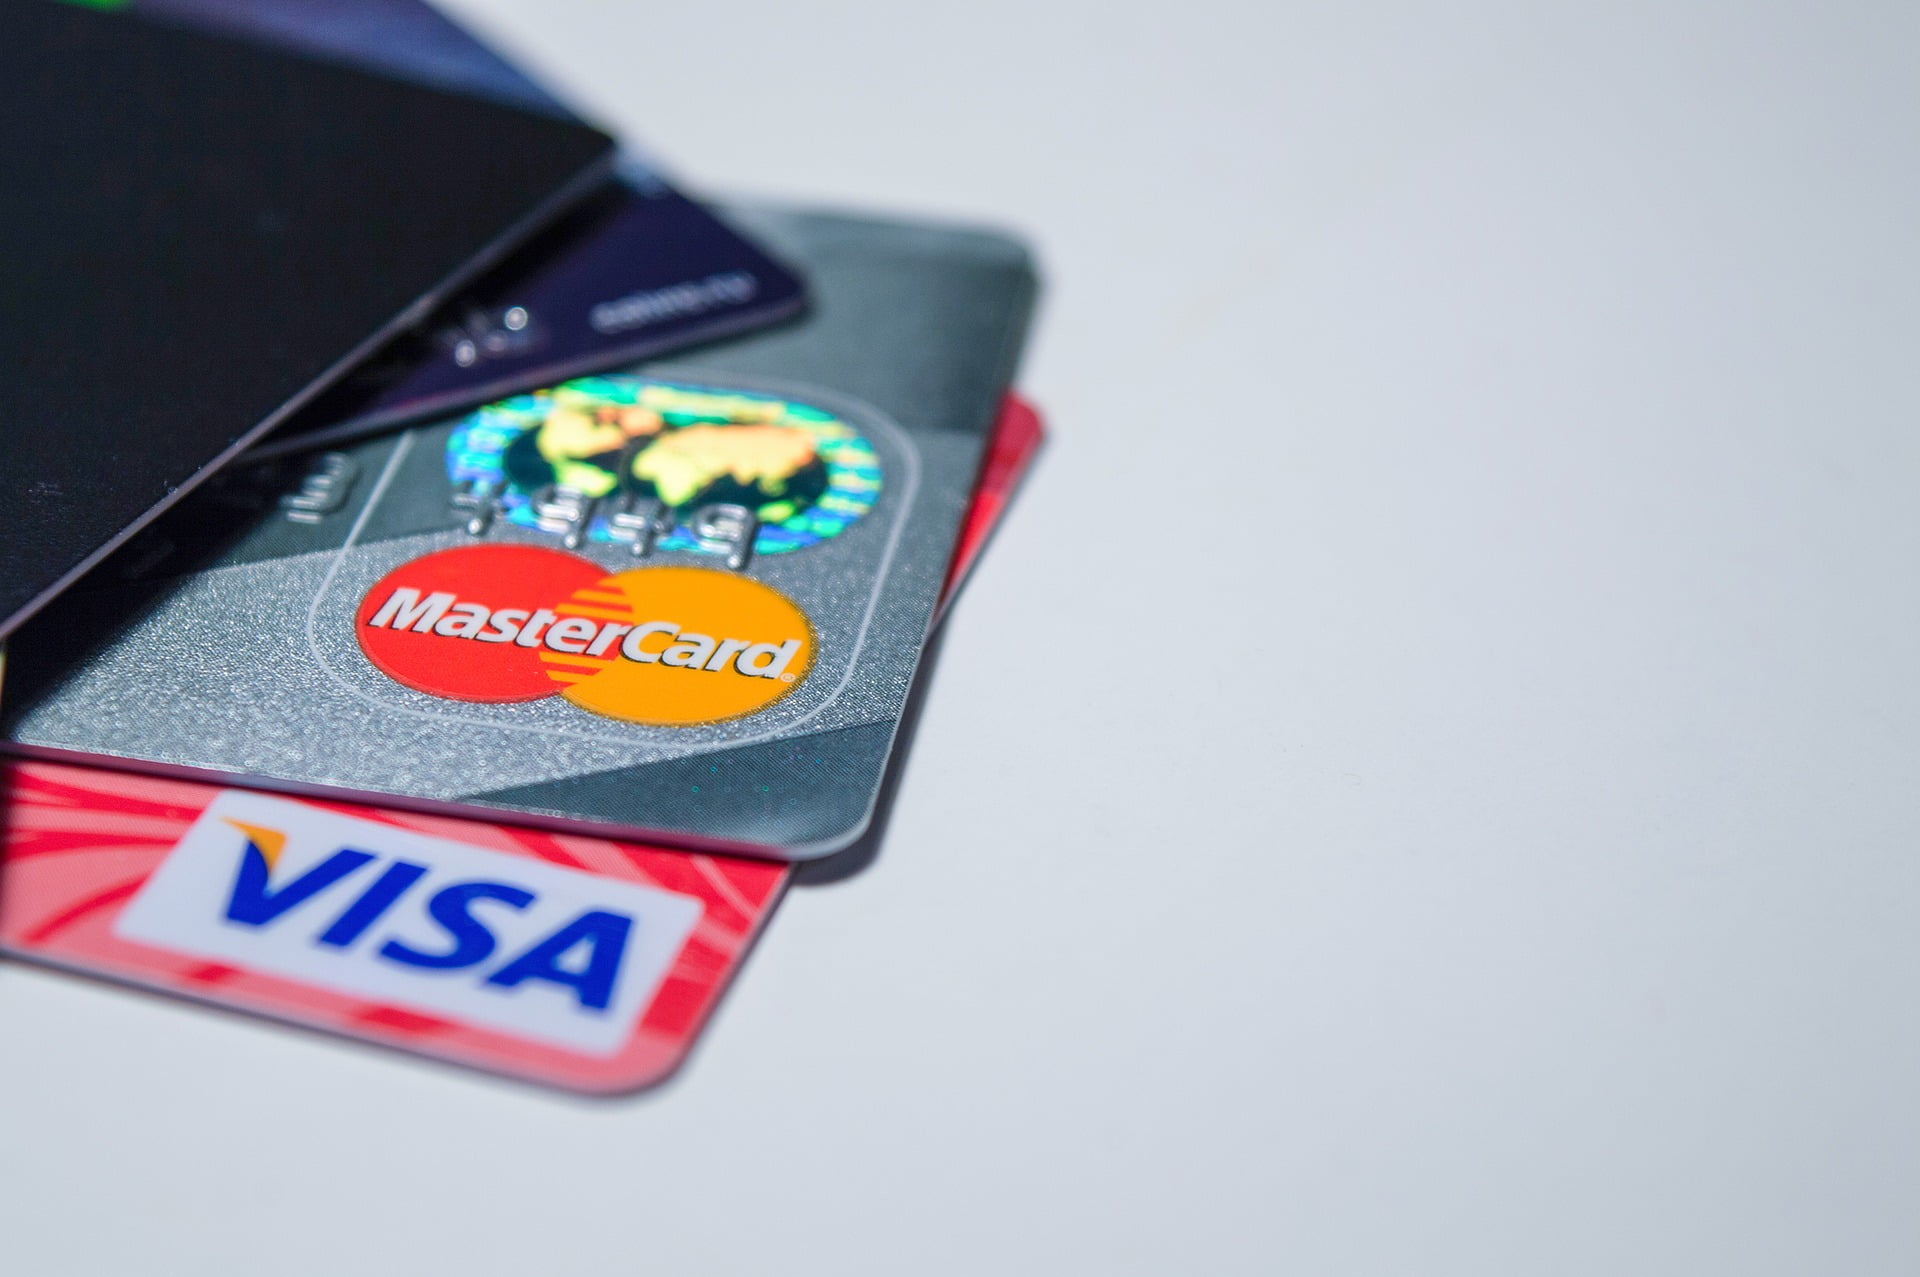 eToro Announces Acquisition to Support Debit Card Launch